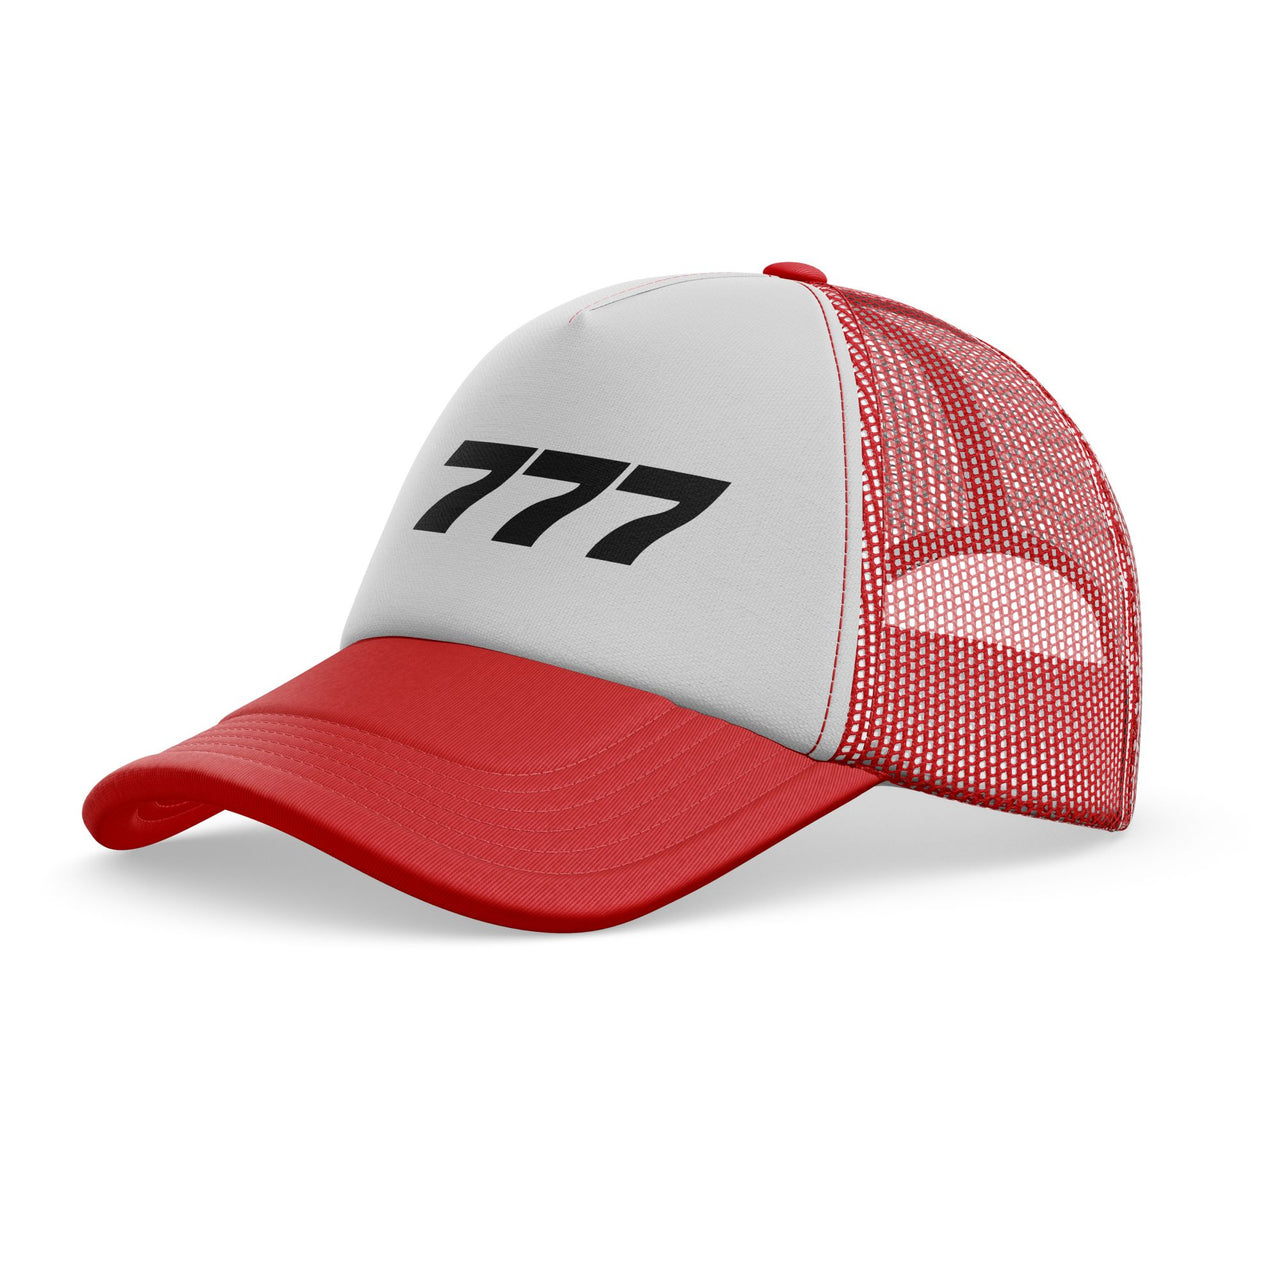 777 Flat Text Designed Trucker Caps & Hats